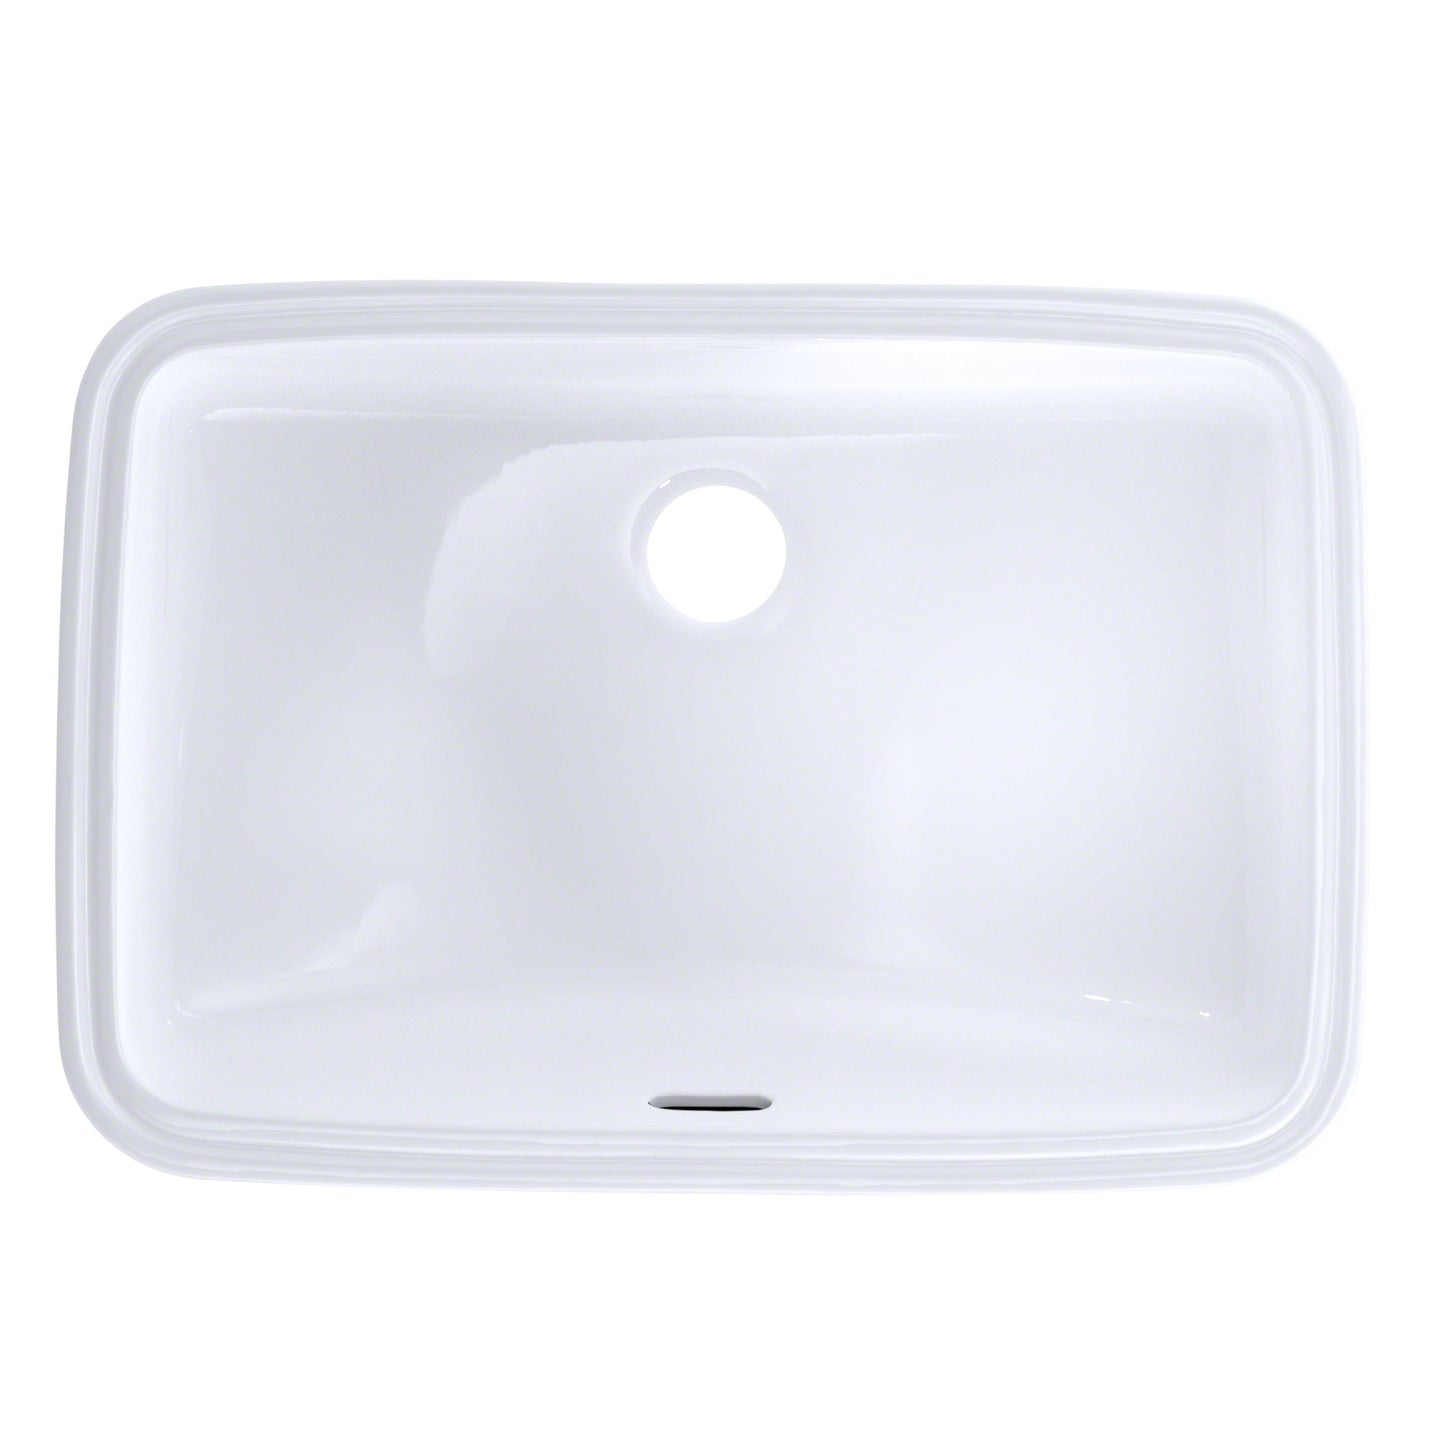 Toto LT542G#01 - 19" X 12-3/8" Undermount Bathroom Sink - Cotton White